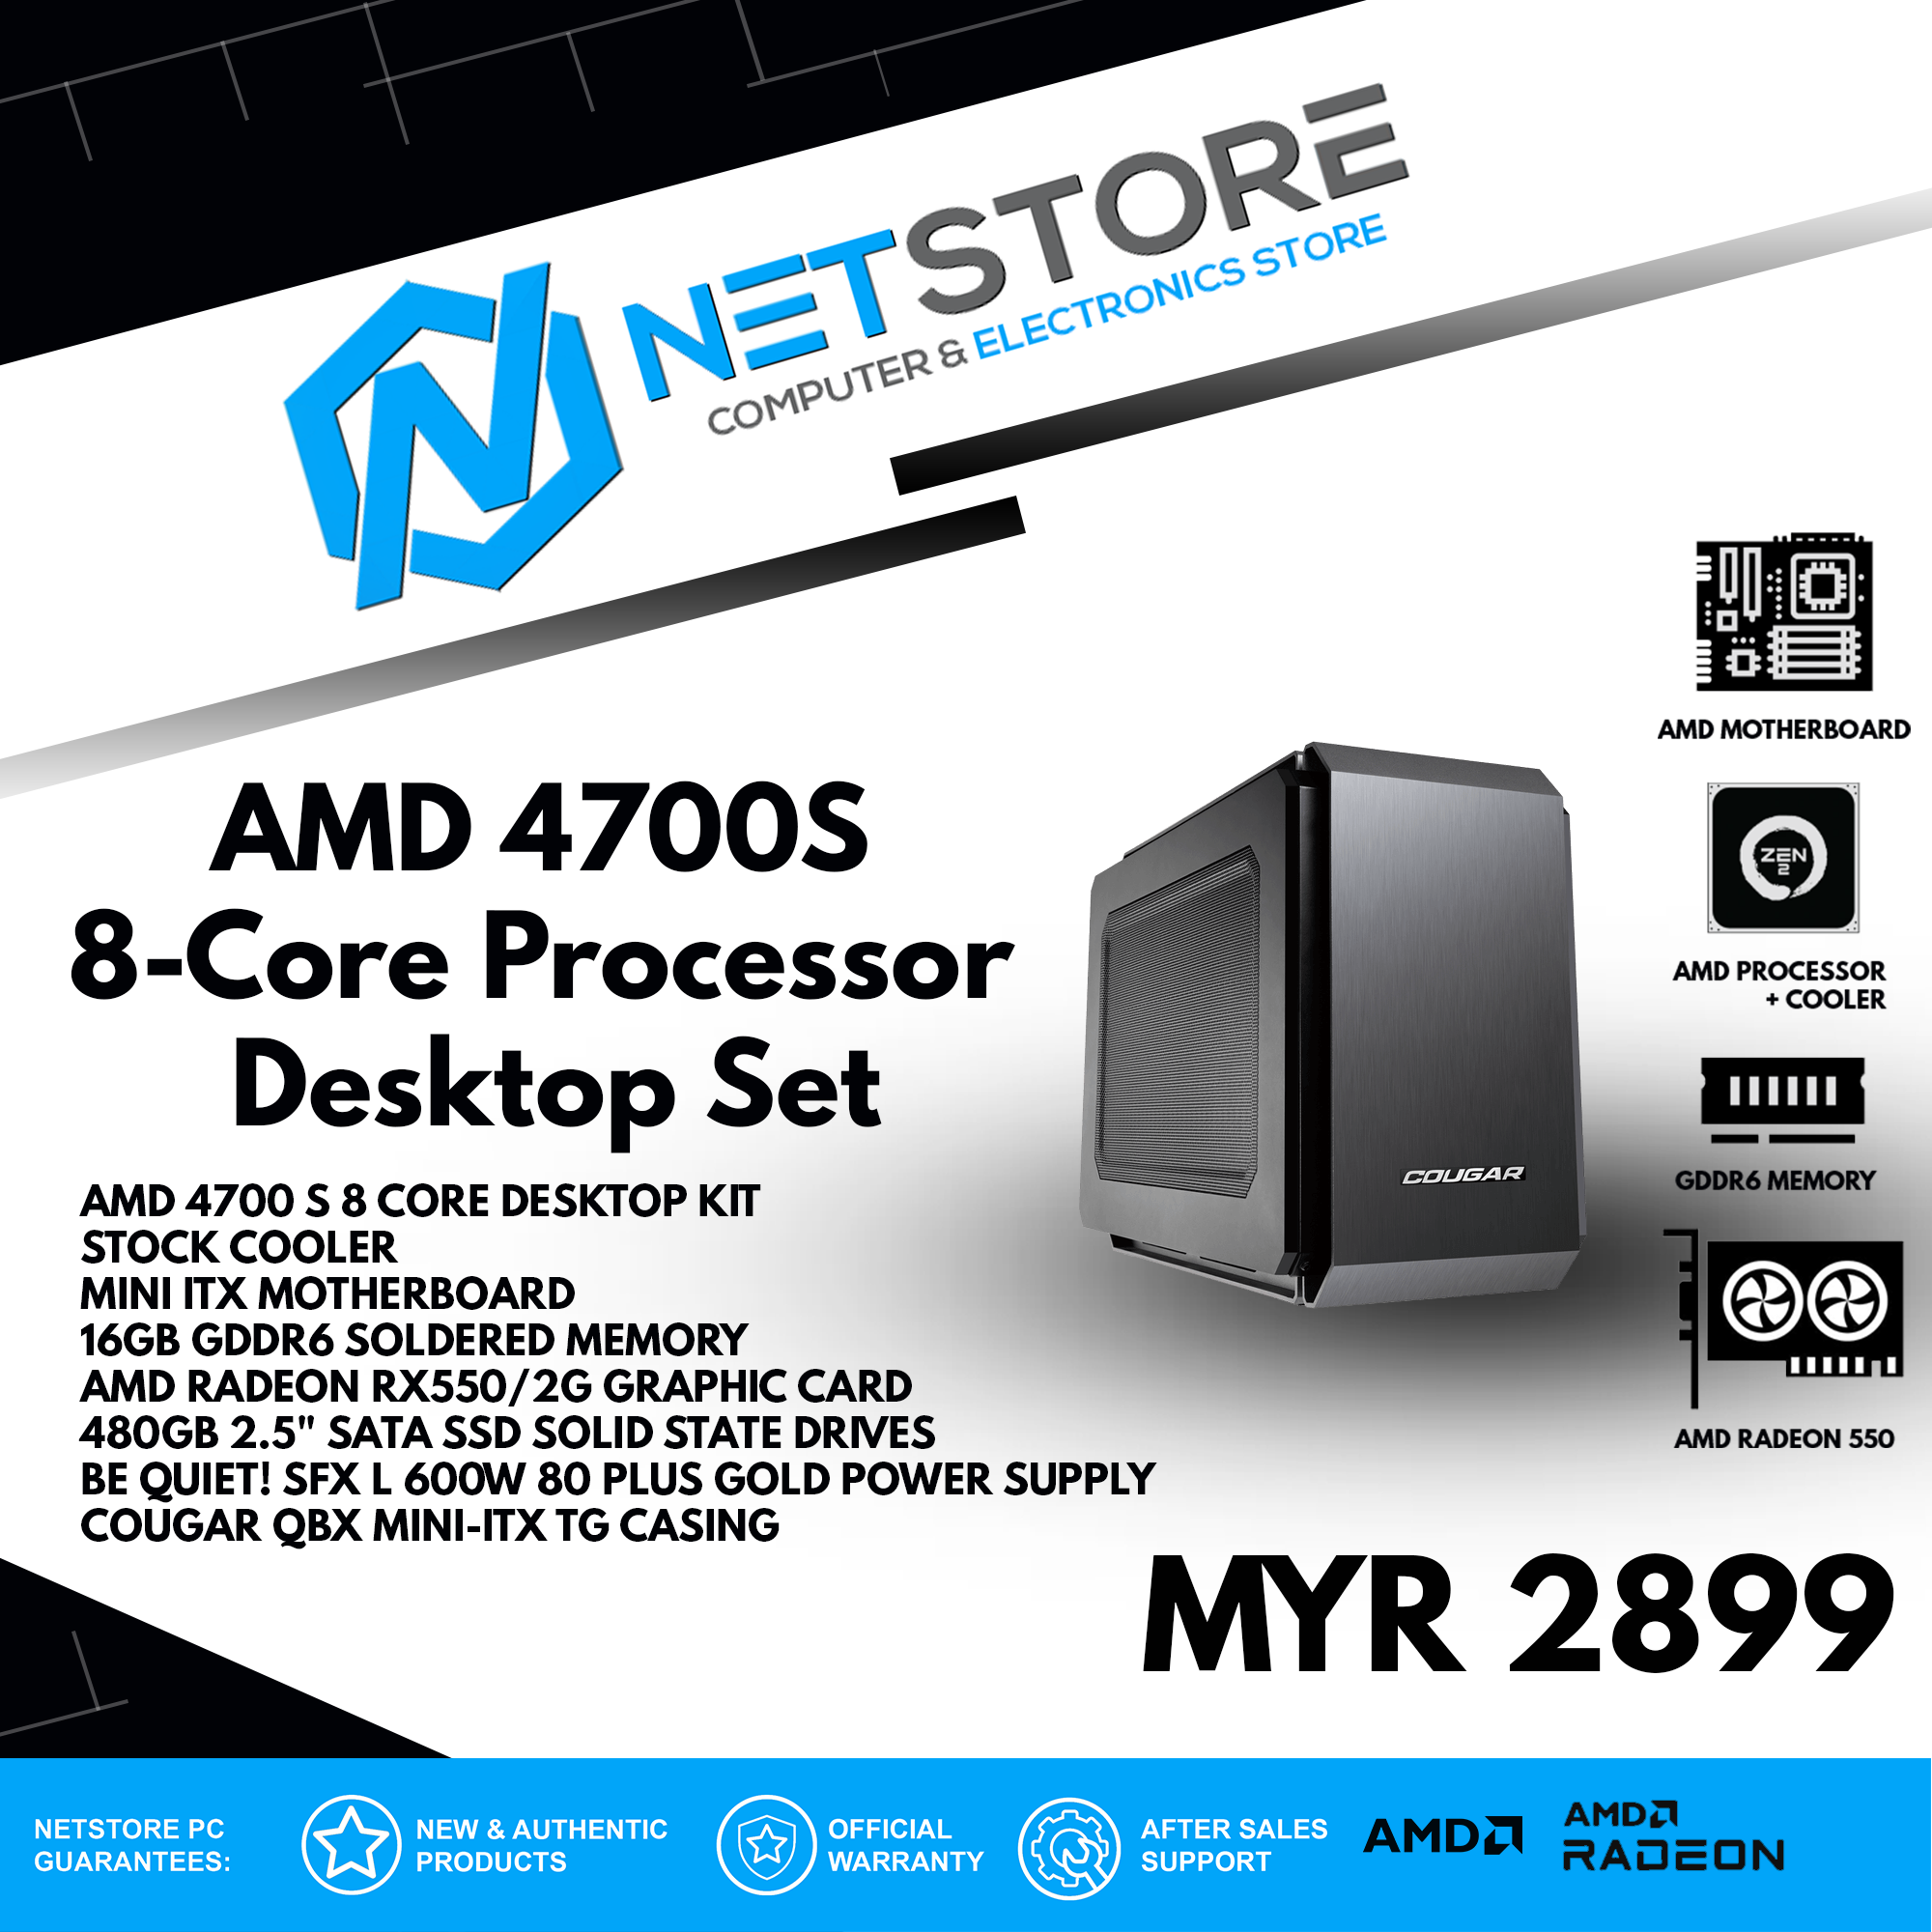 NETSTORE - AMD 4700 S 8 CORE MINI ITX DESKTOP